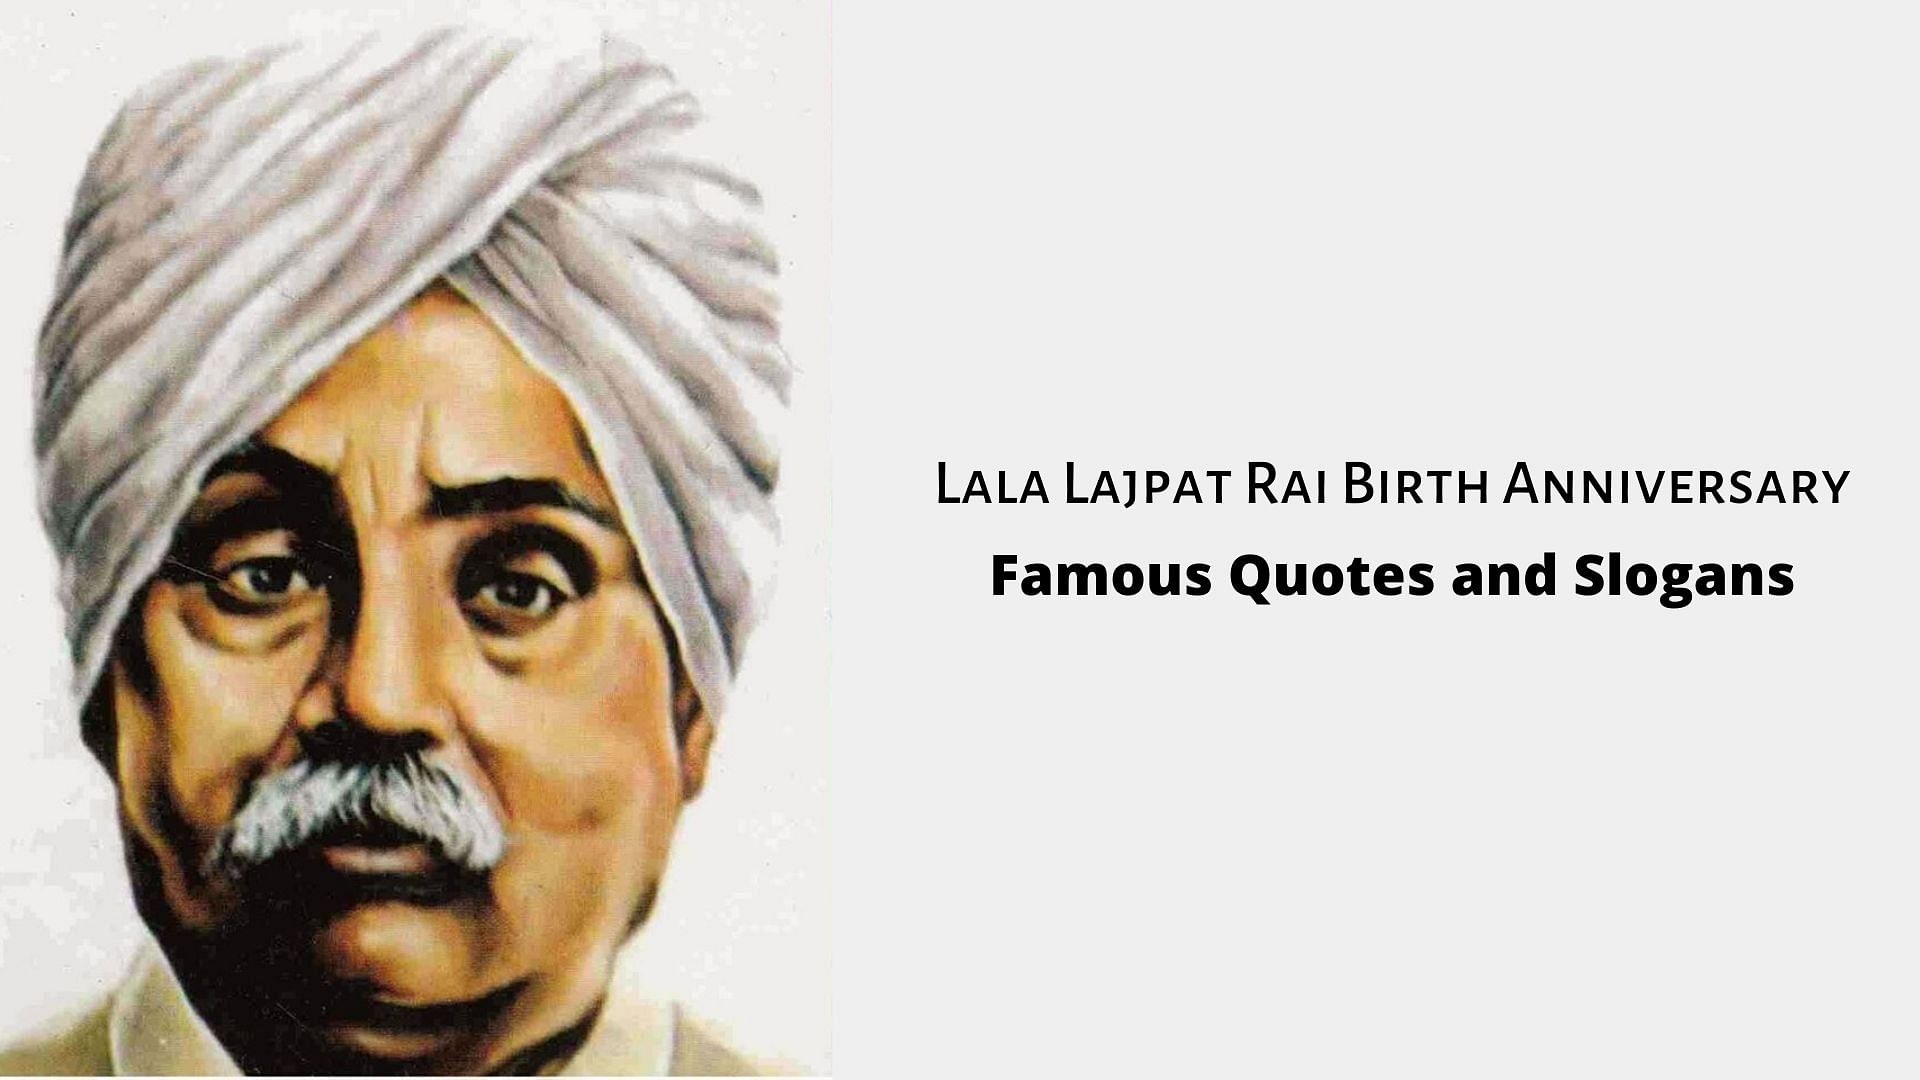 Lala Lajpat Rai 154th Birth Anniversary&nbsp;